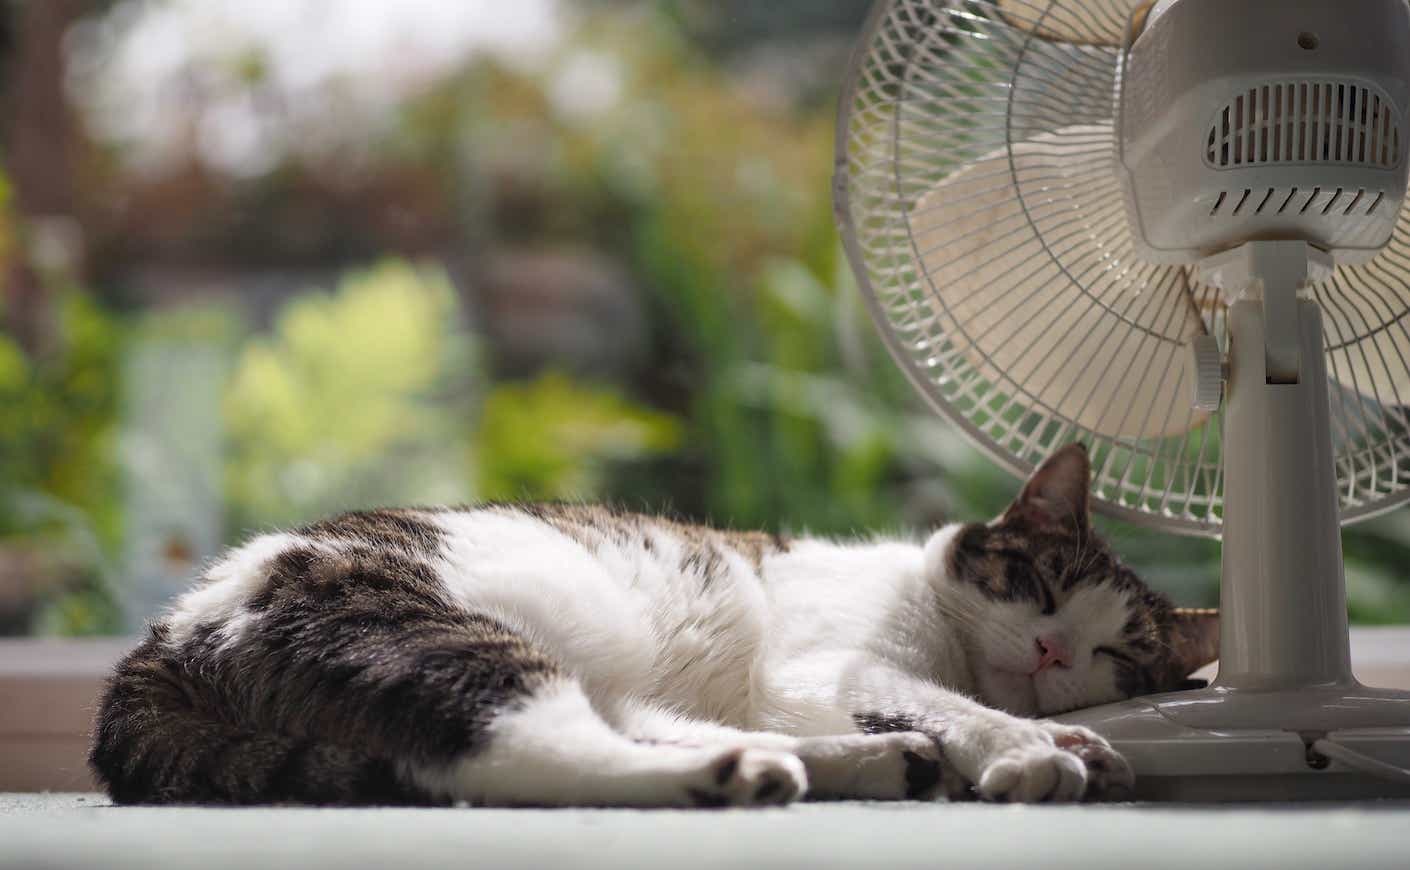 cat sleeping next to a fan